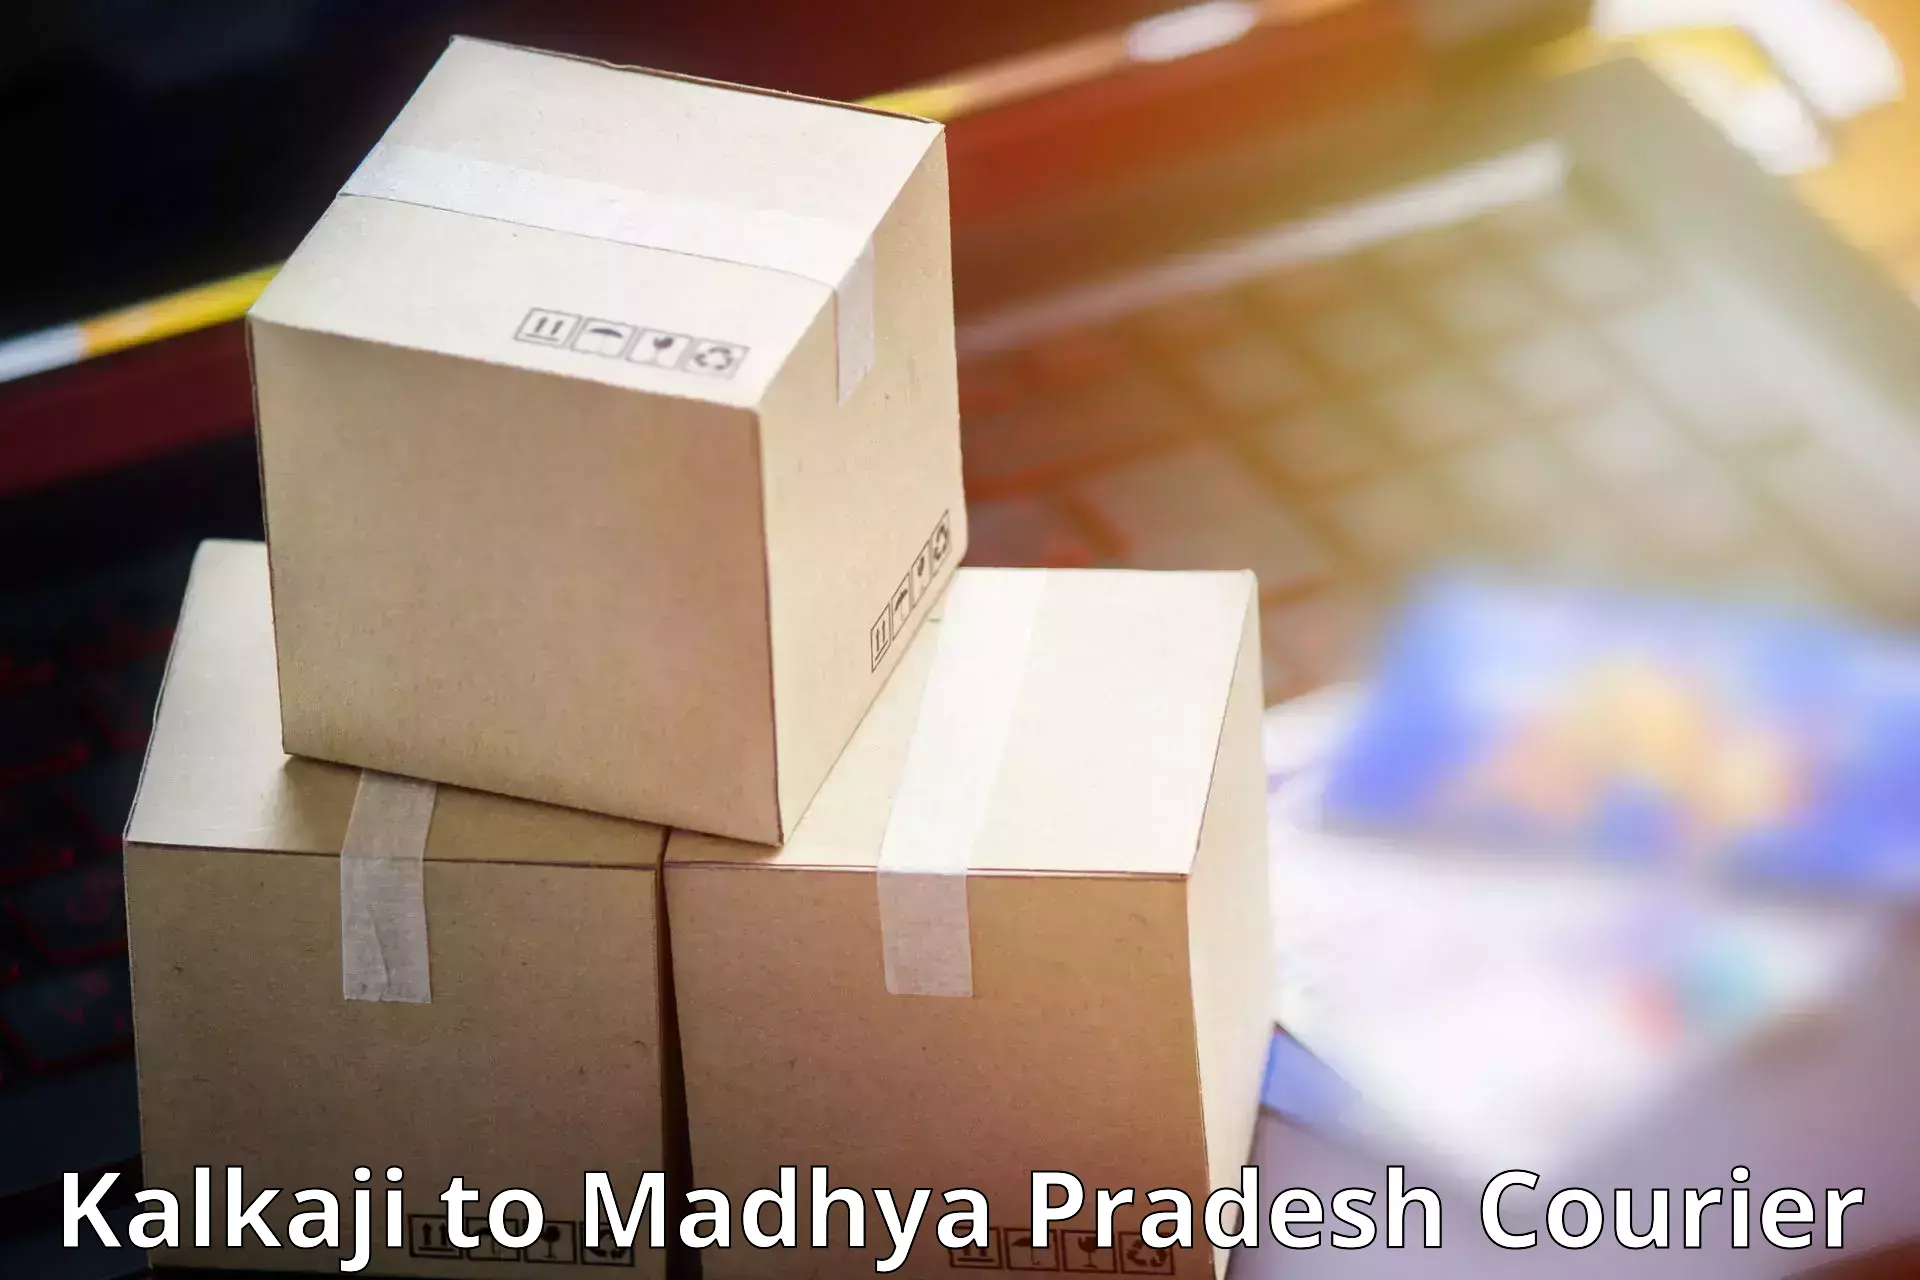 Reliable courier service Kalkaji to Deosar